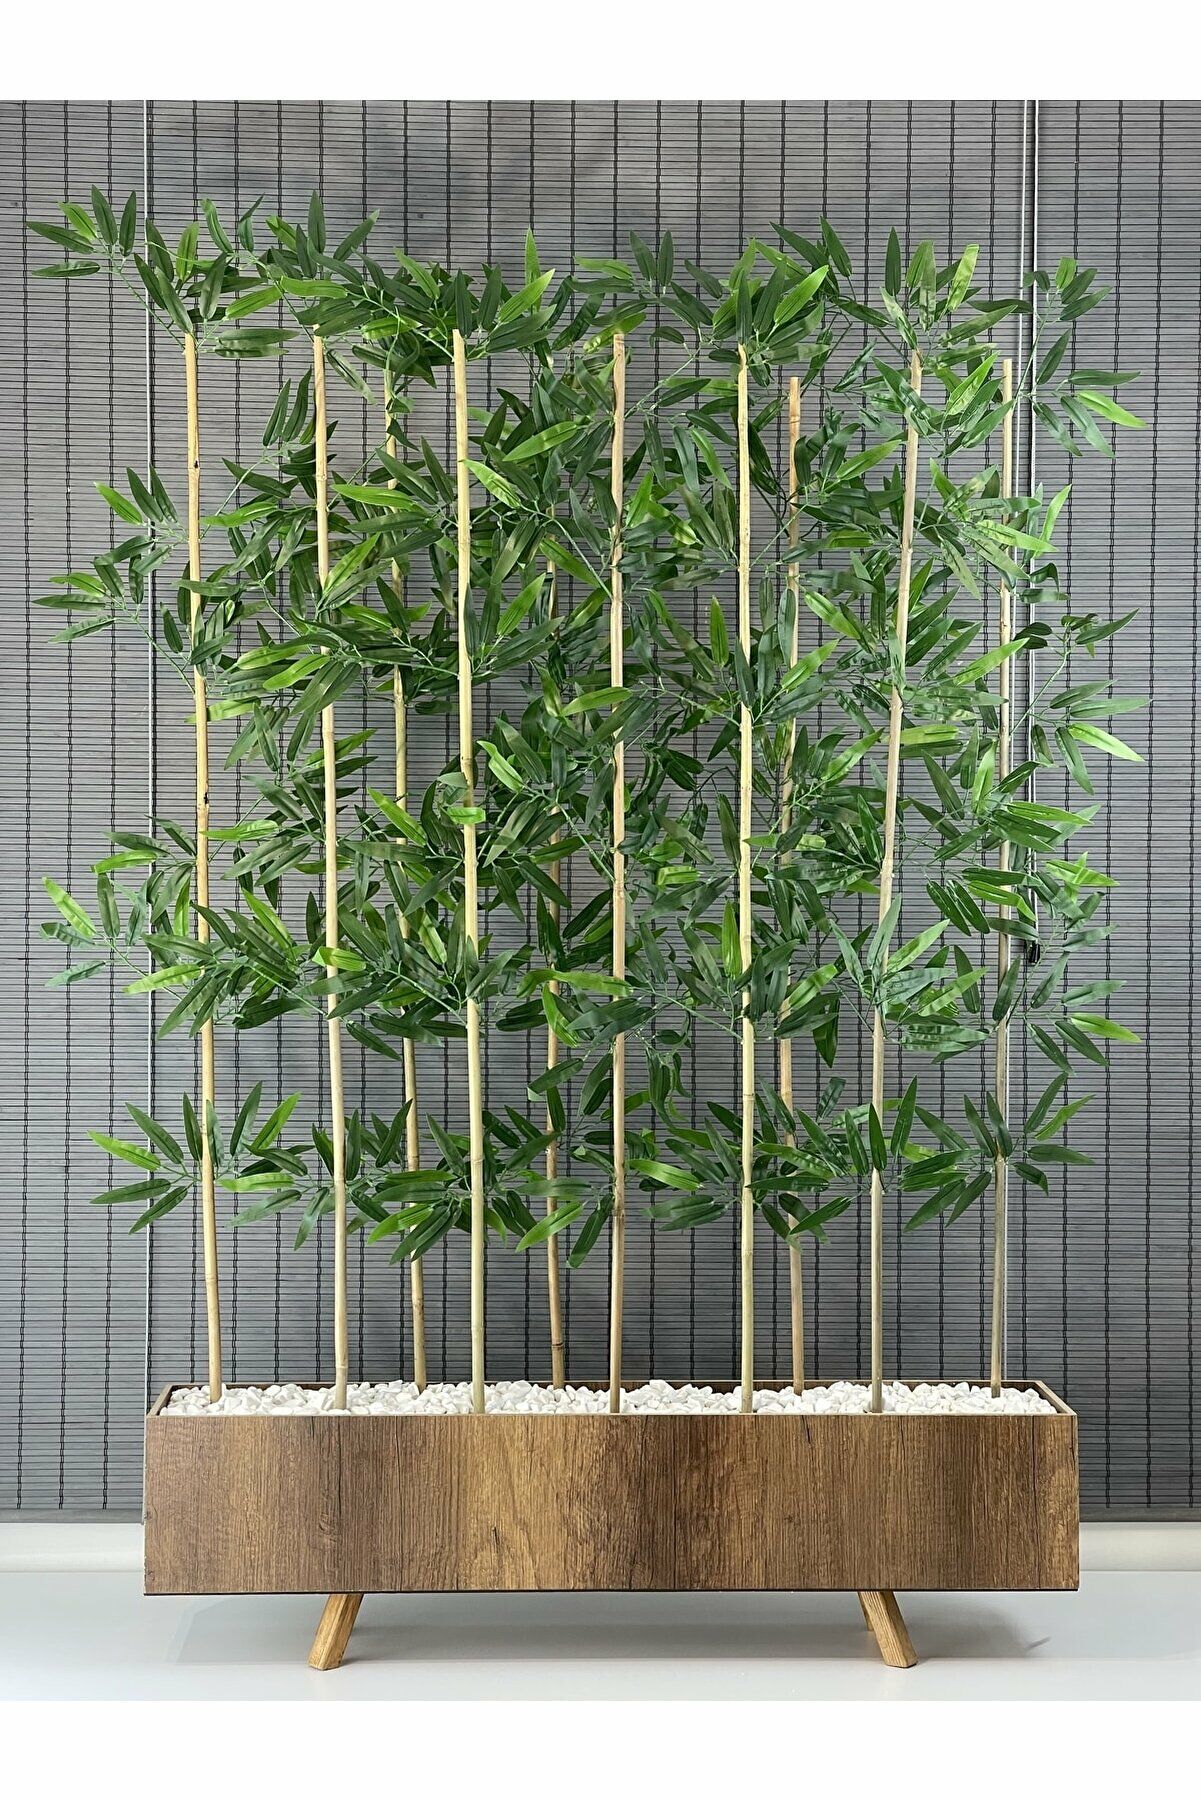 Bahçem Ahşap Saksılı 1 Mt Ayaklı Dikdörtgen Model Yapay Yapraklı Dekoratif Bambu Seperatör 180 cm 10 Gövde